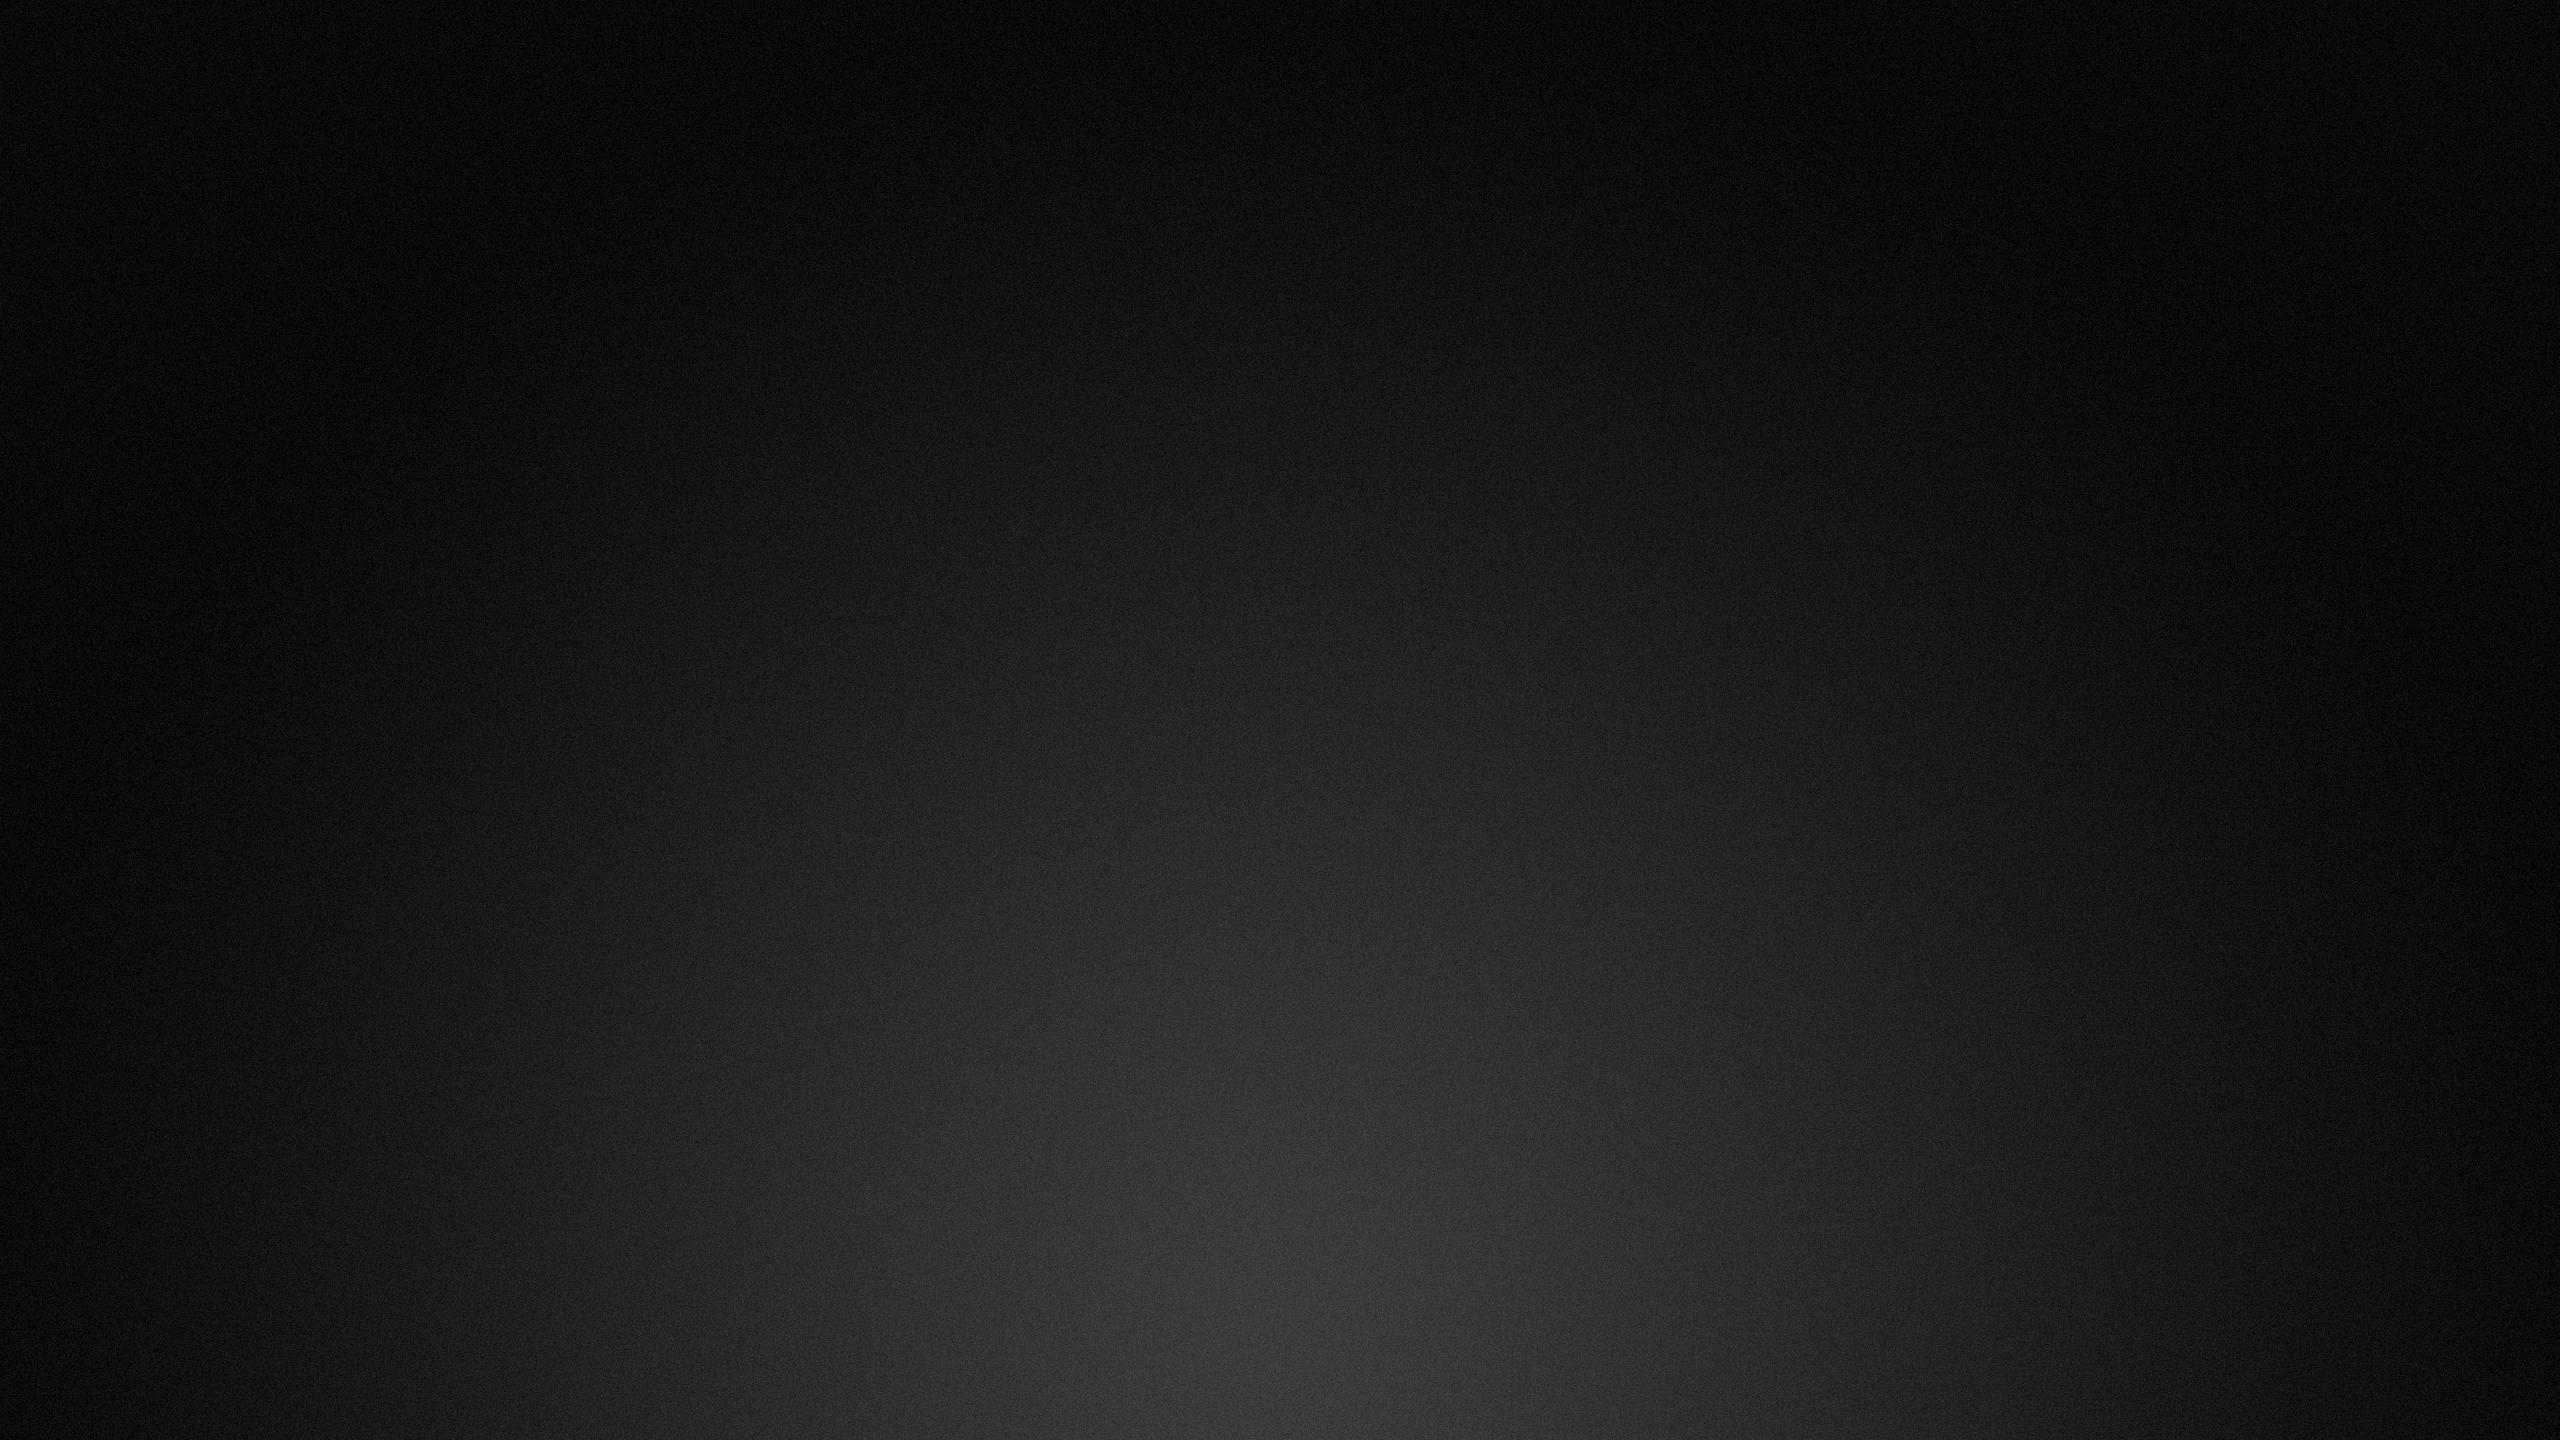 Hình nền đen đẹp - Tổng hợp hình nền màu đen đẹp nhất | Poster abstrak,  Kucing hitam, Abstrak